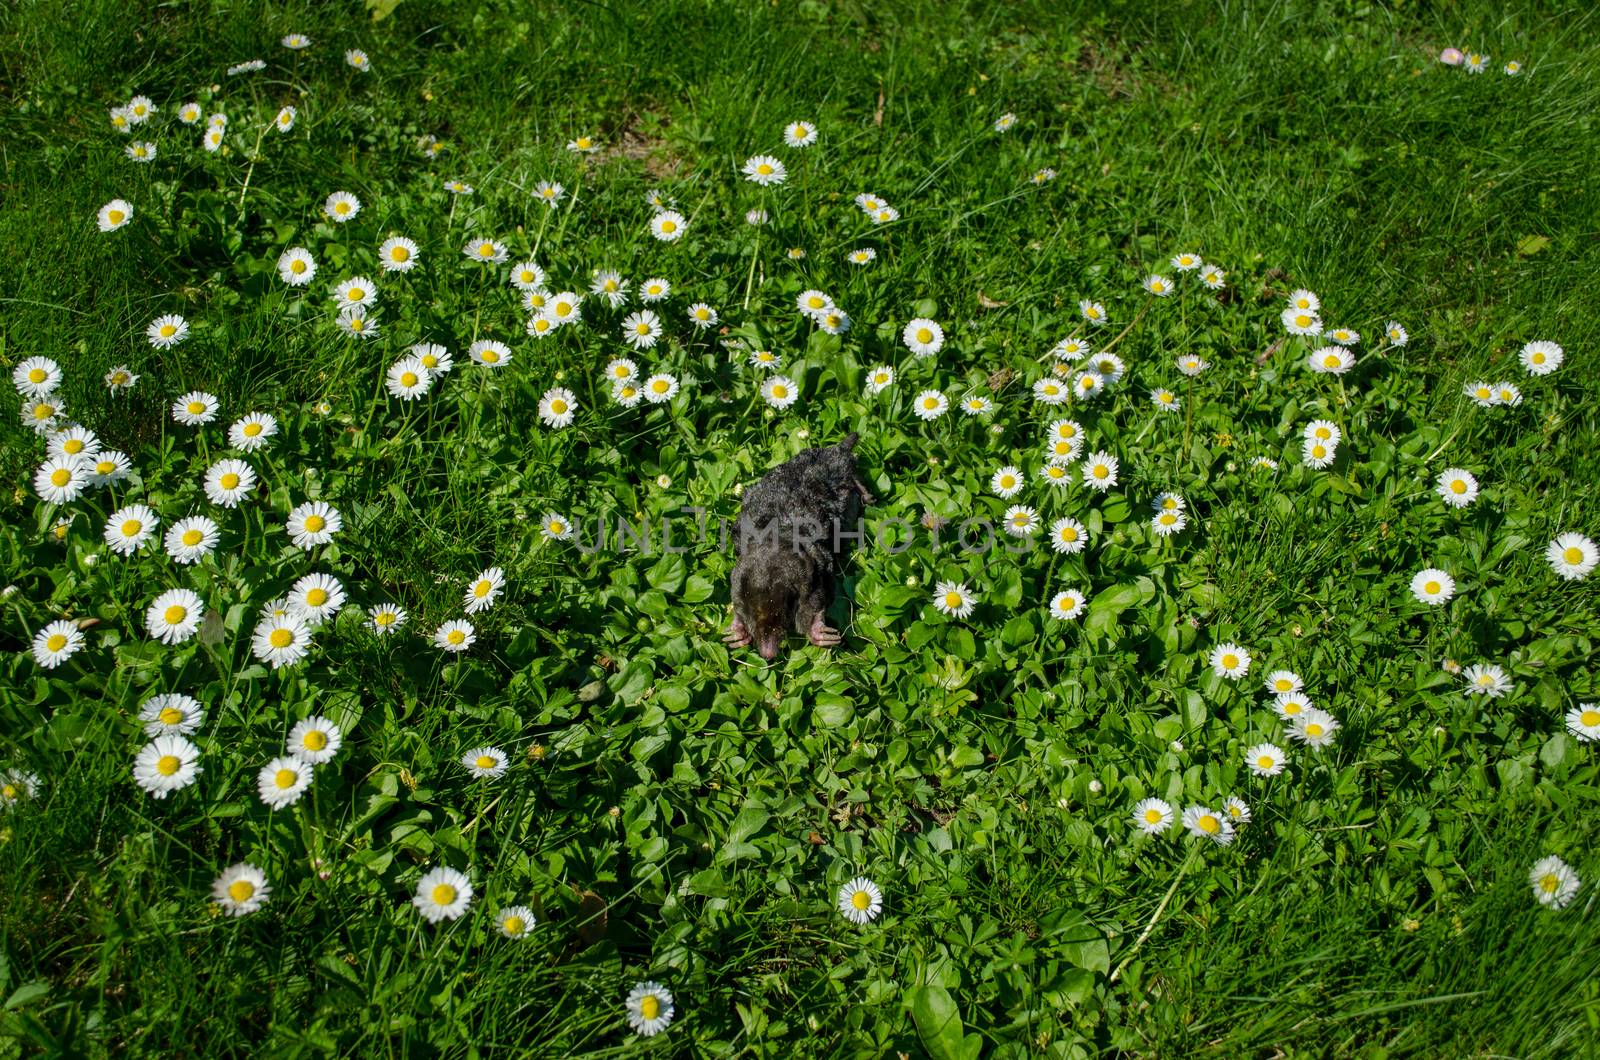 dead black mole in meadow between daisy flowers by sauletas